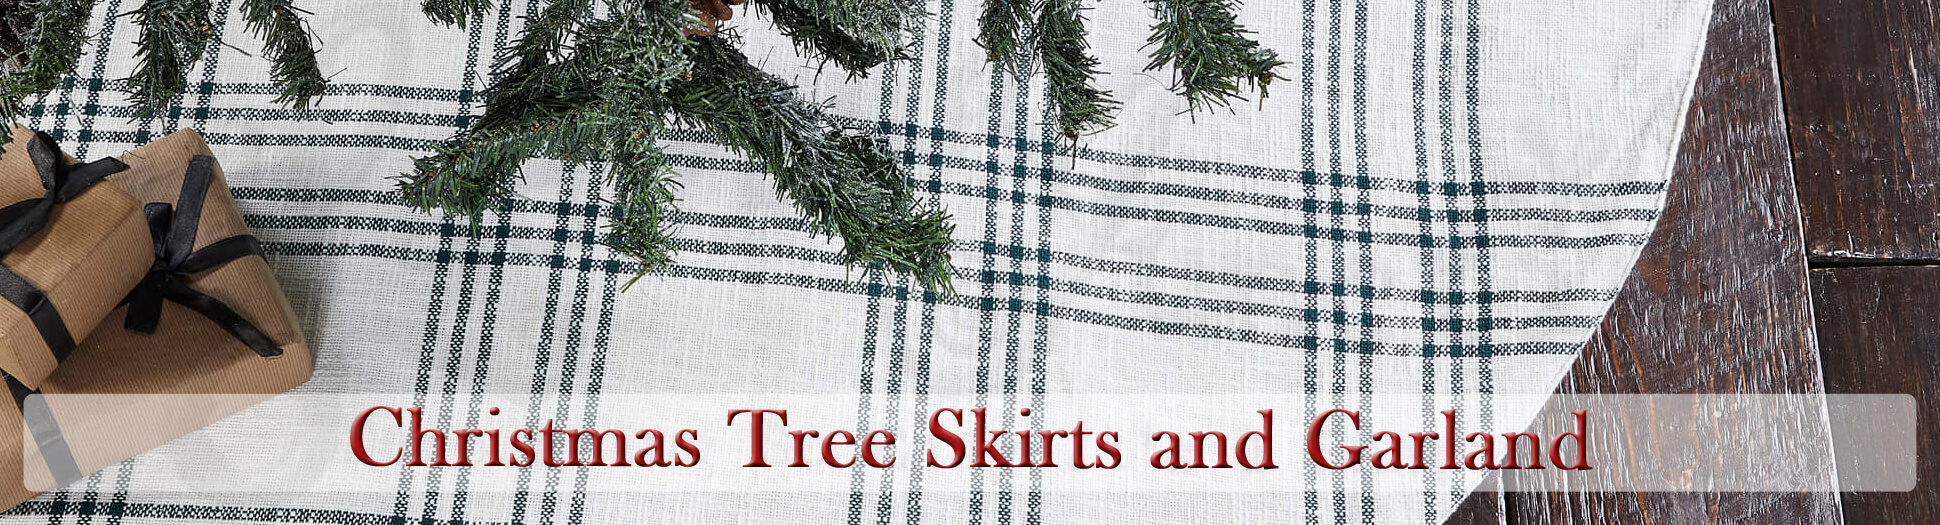 Christmas Tree Skirts and Garland